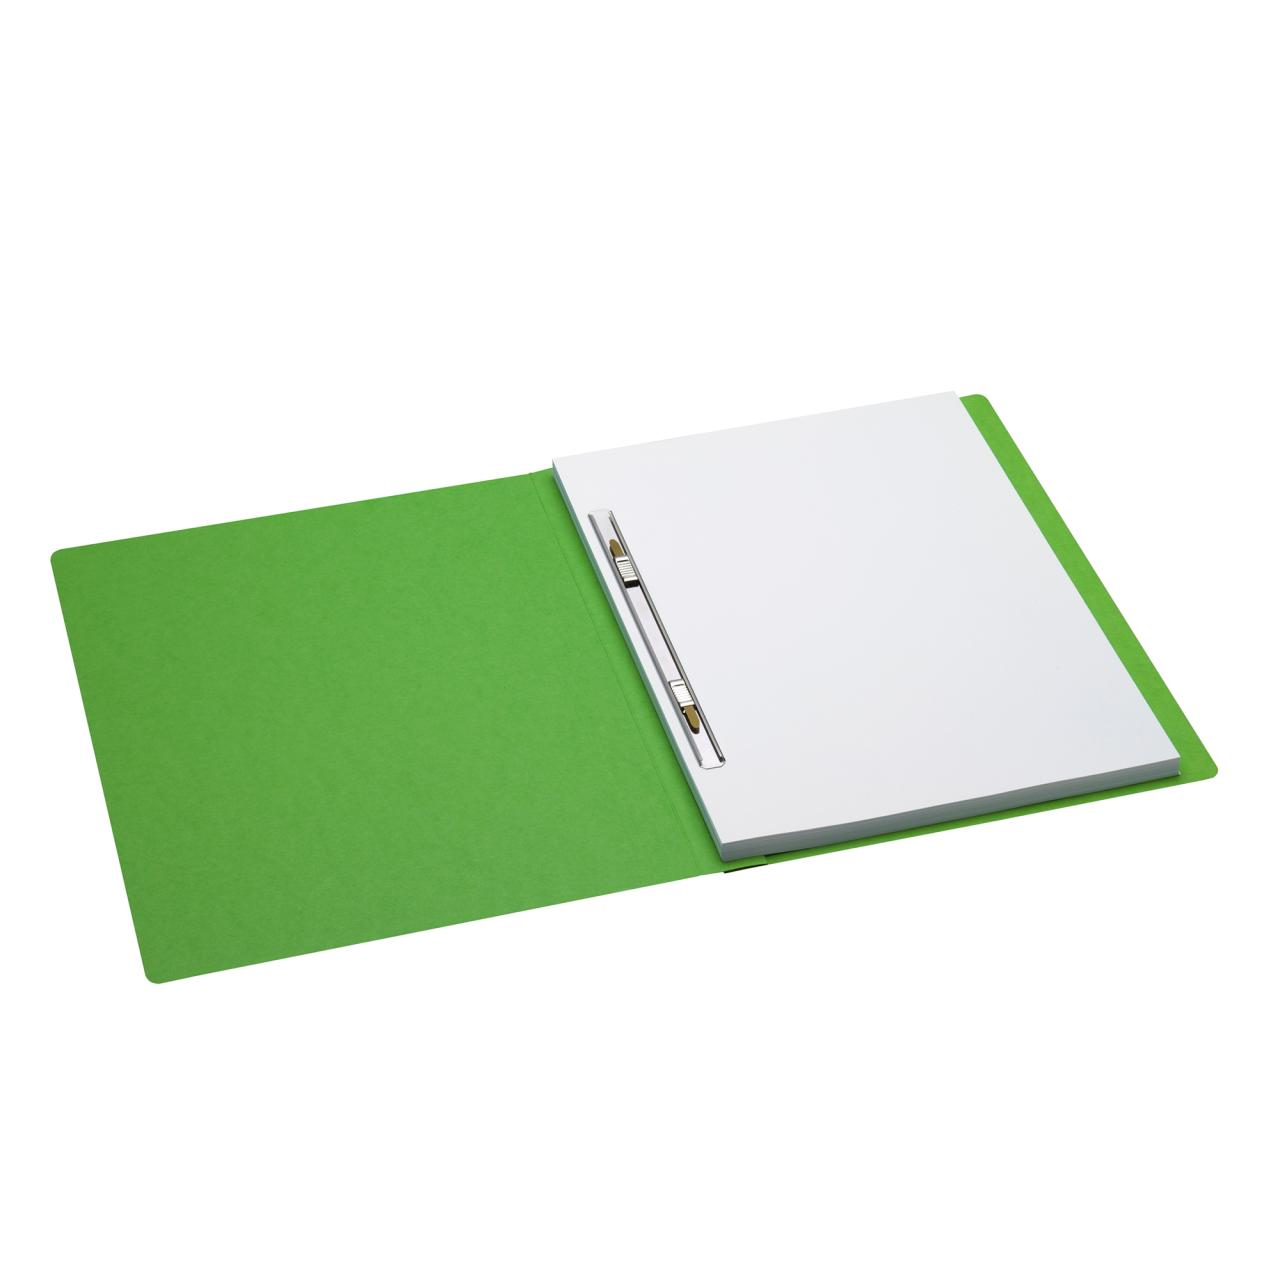 Secolor Folder with Metal Slide Fastener A4, 100% recycled cardboard, FSC® 